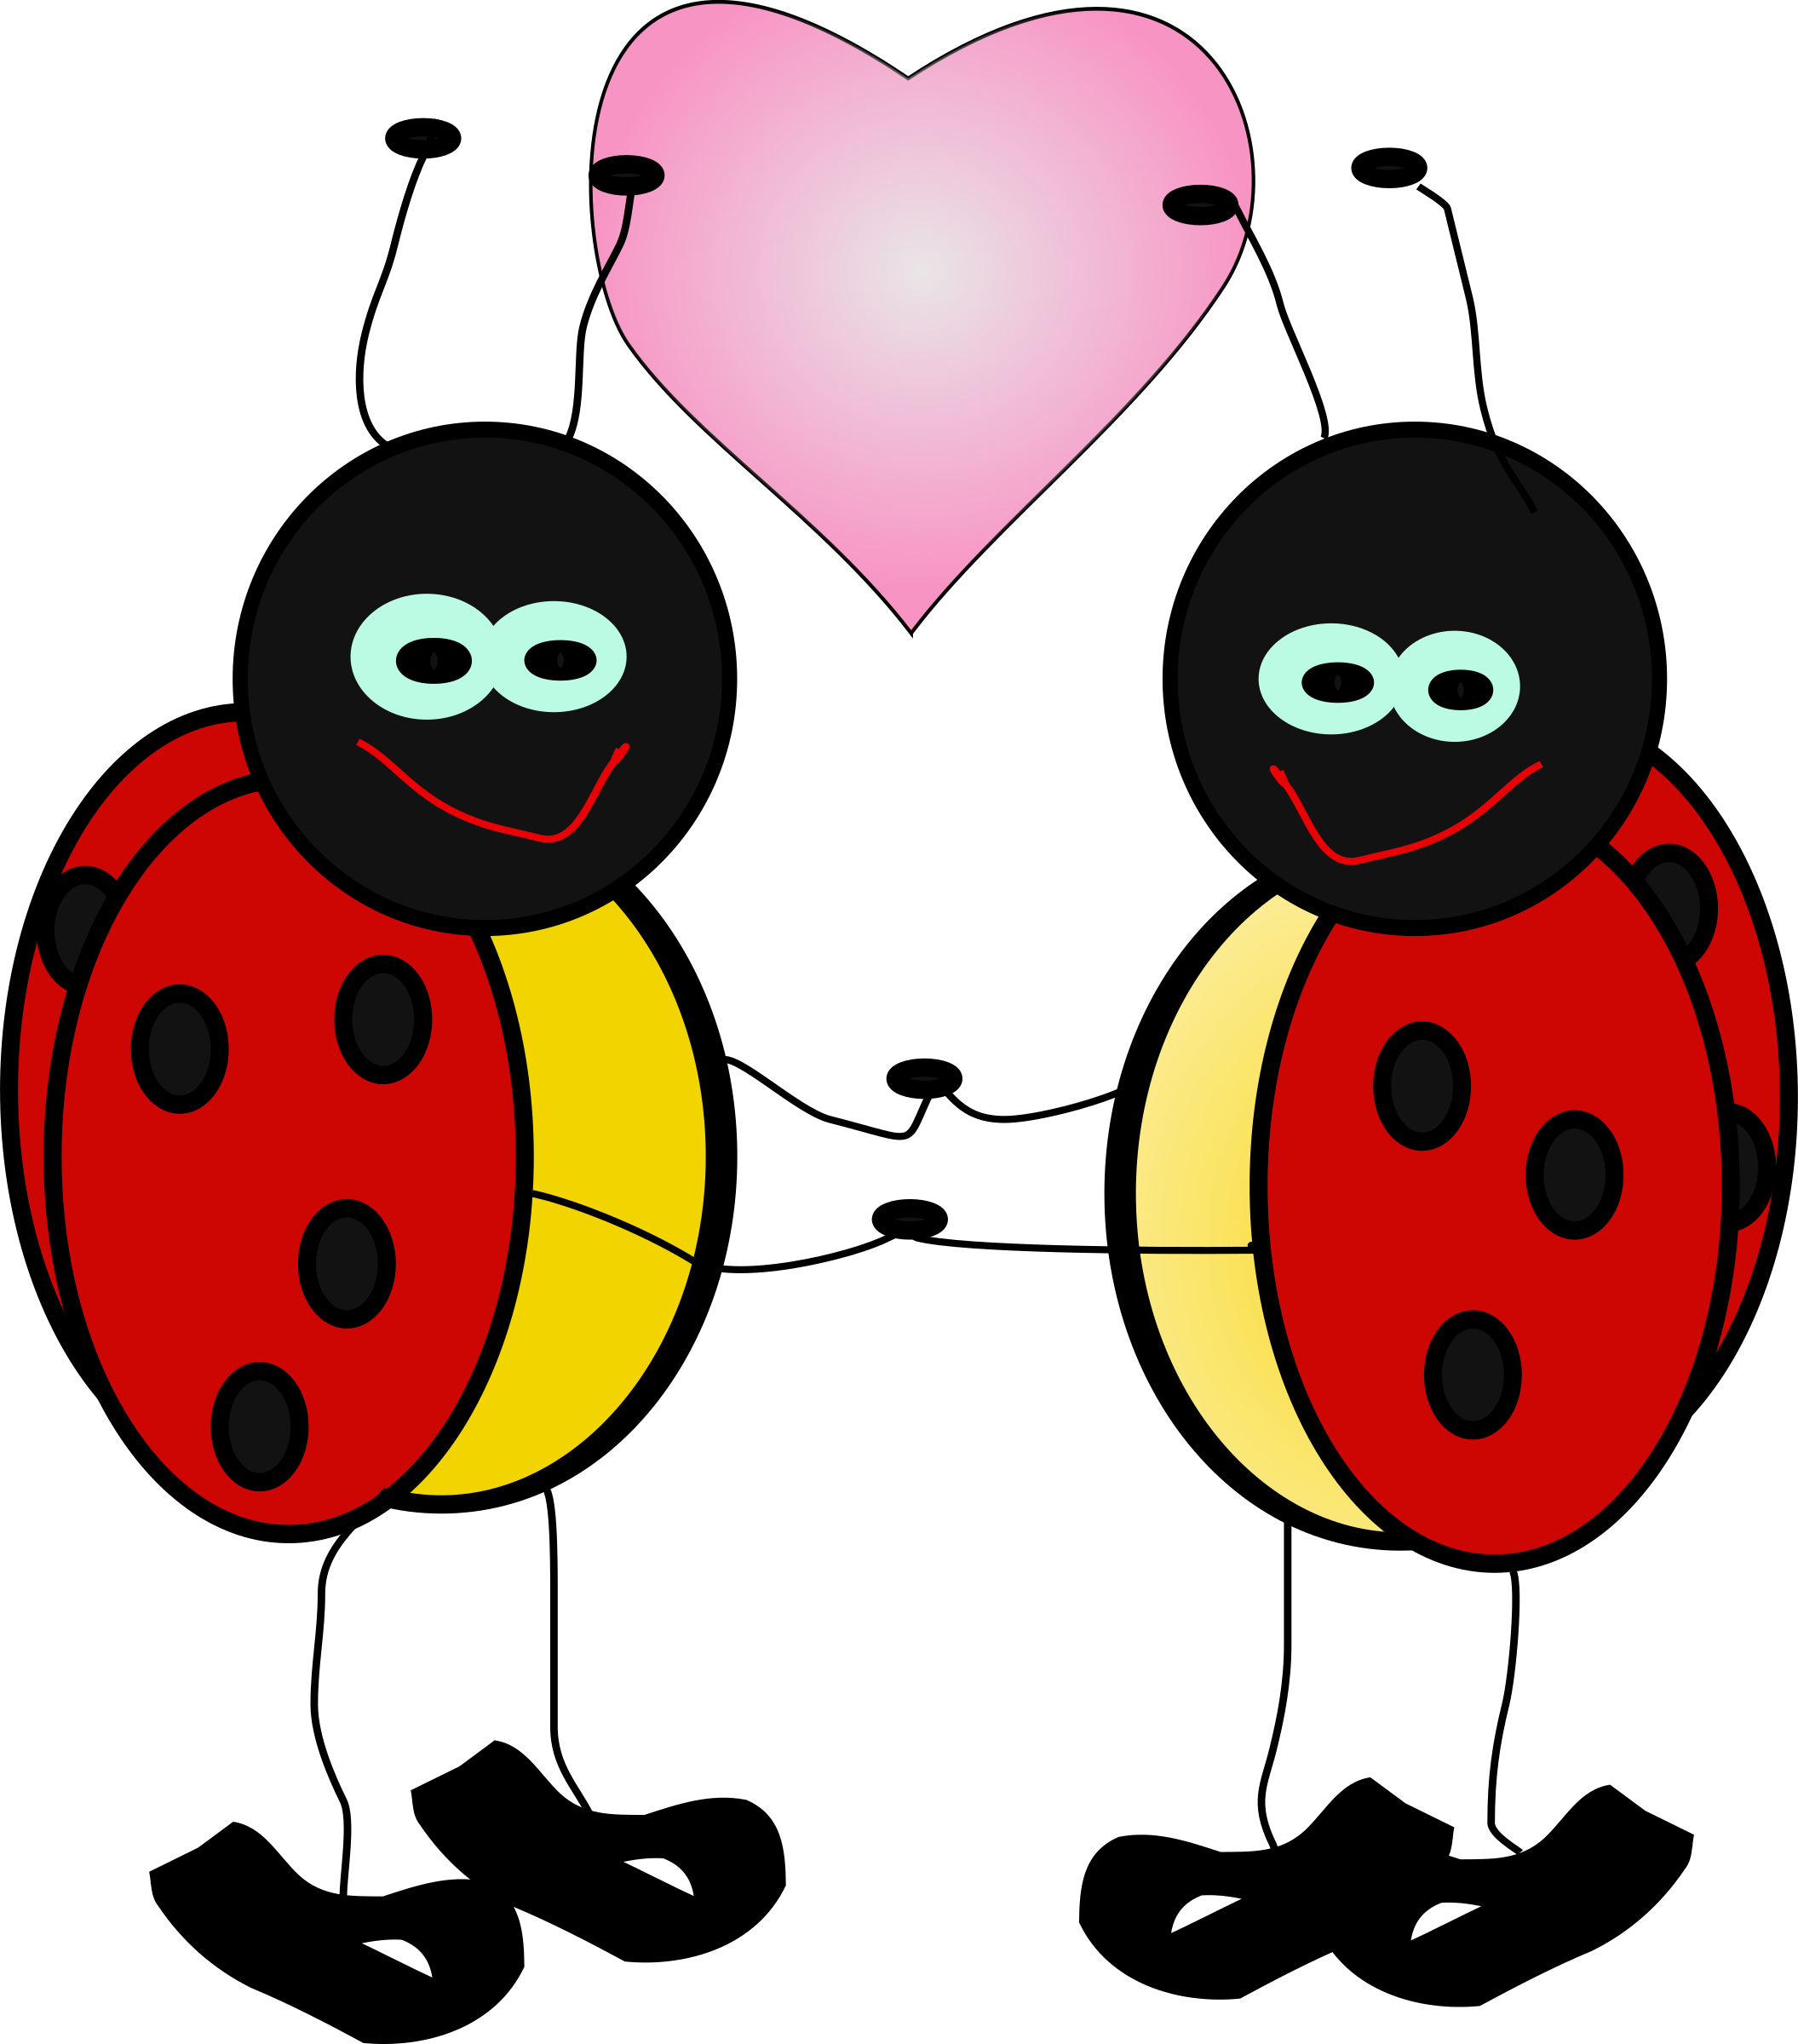 Lady bugs big image. Ladybugs clipart cartoon